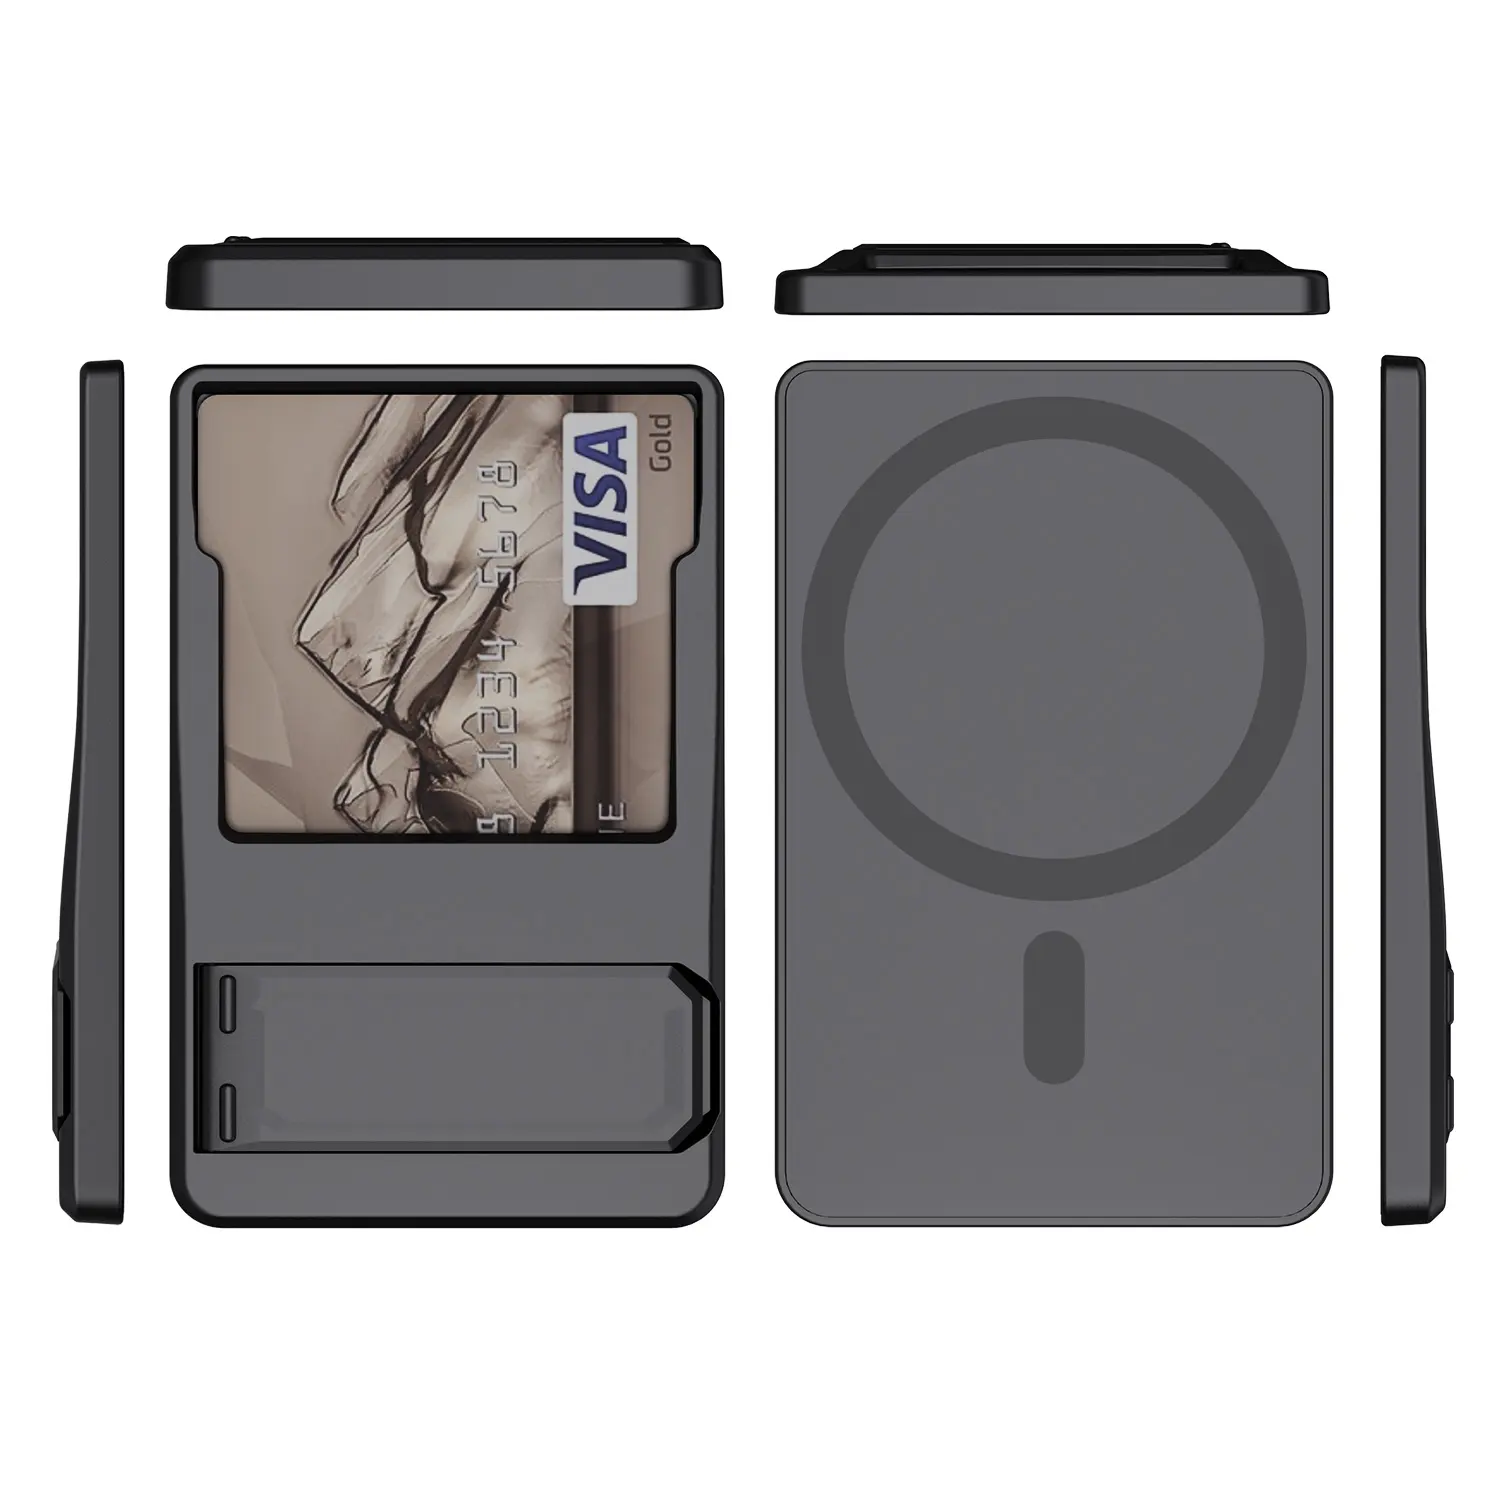 กระเป๋าสตางค์ที่ใส่บัตรแม่เหล็กออกแบบโดยดีไซเนอร์สากลพร้อมขาตั้งสีดำ MAG ช่องใส่บัตรปลอดภัยสำหรับเคสโทรศัพท์มือถือ